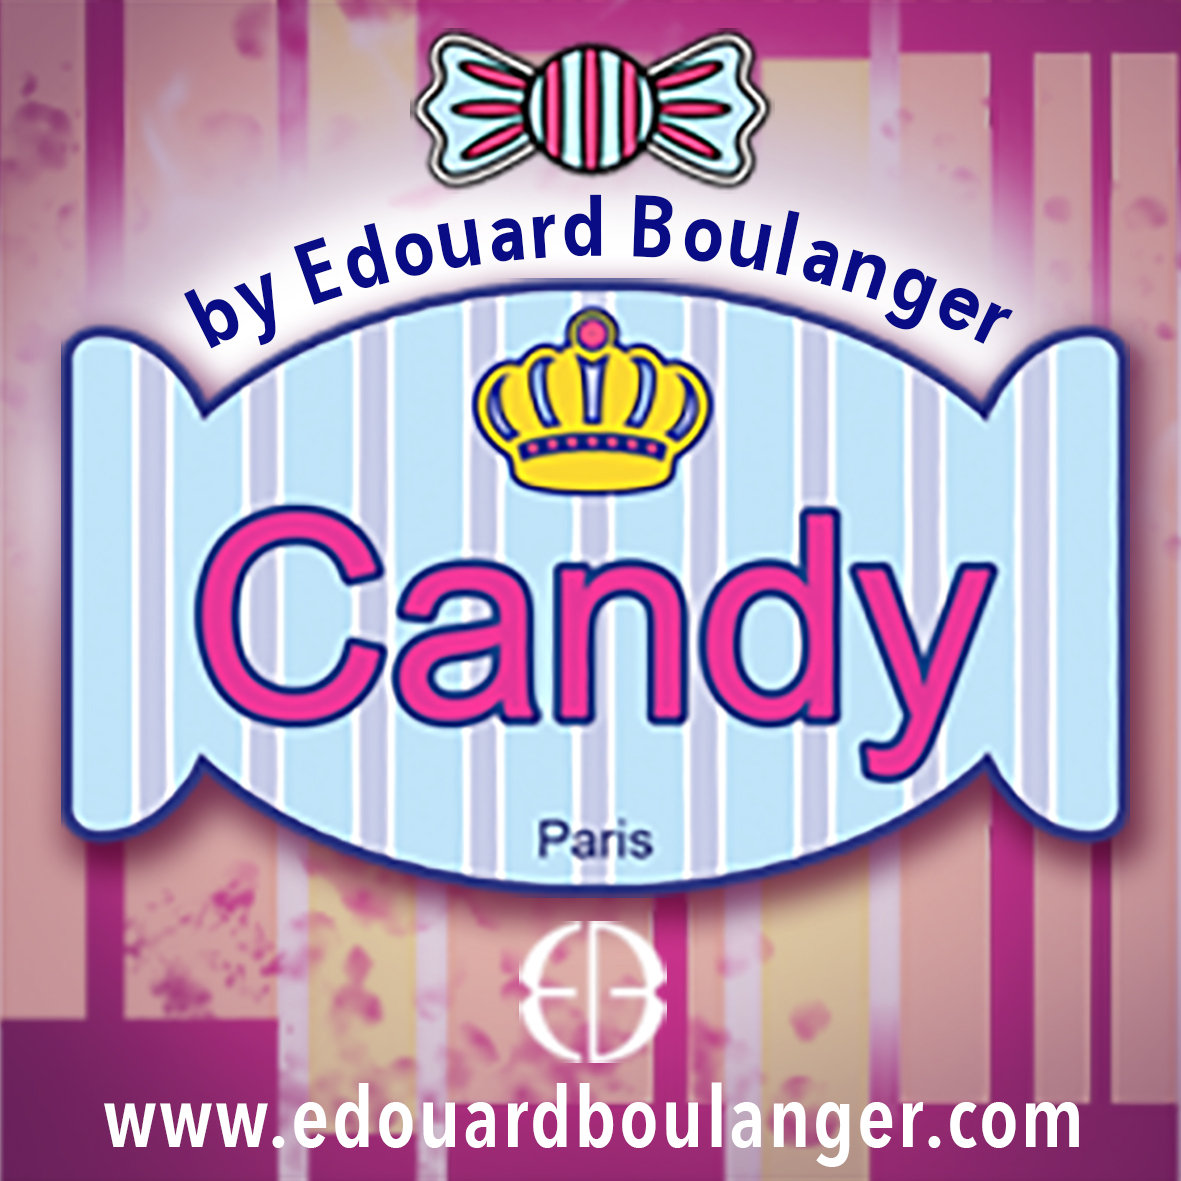 Candy-Tour-Edouard Boulanger